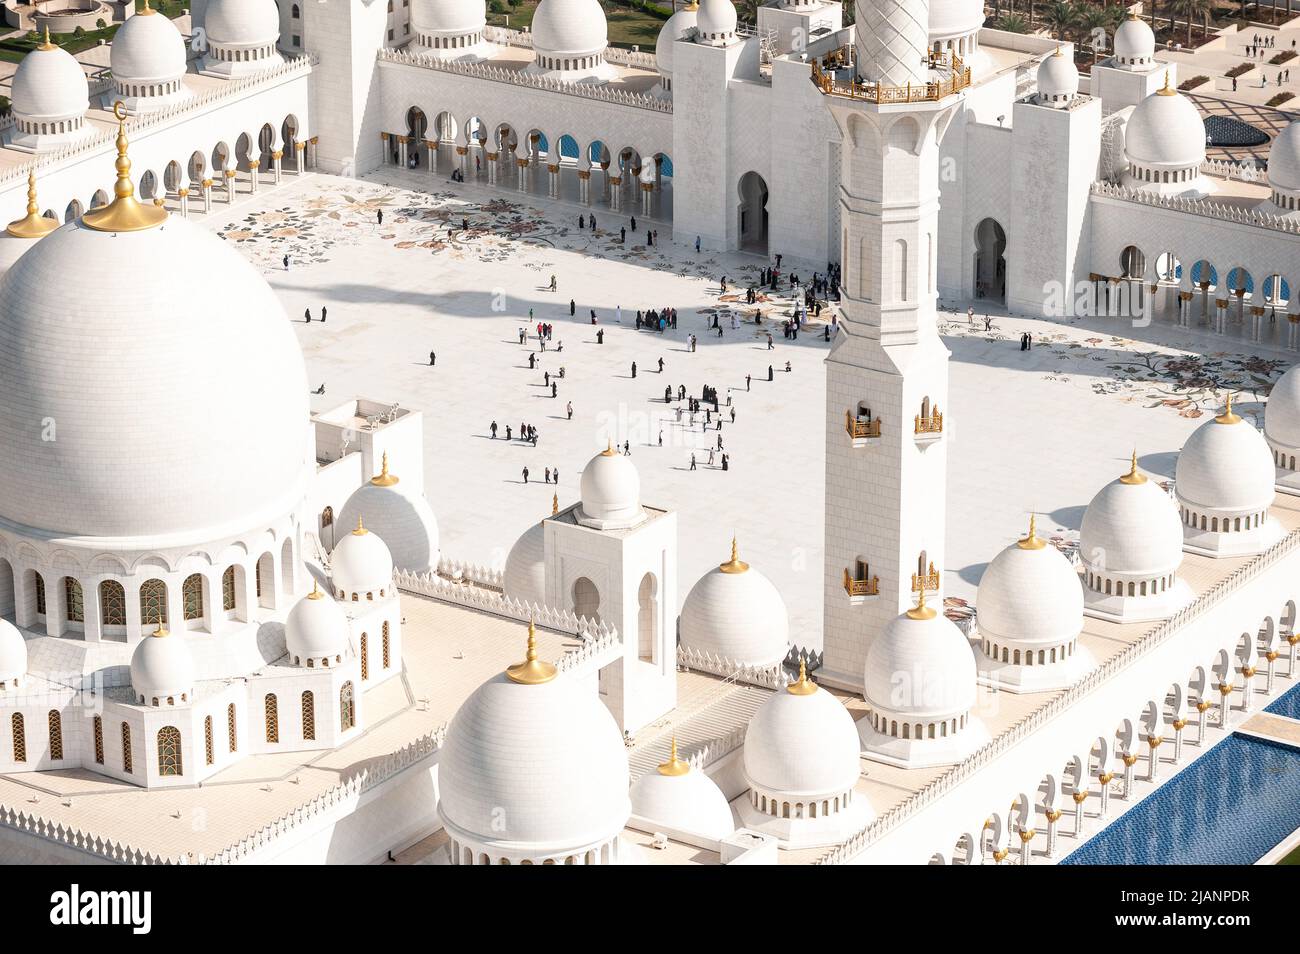 Photos aériennes exclusives d'Abou Dhabi et de la Grande Mosquée Sheikh Zayed. Perspective unique de la plus grande mosquée des Émirats Arabes Unis. Tourisme religieux. Banque D'Images